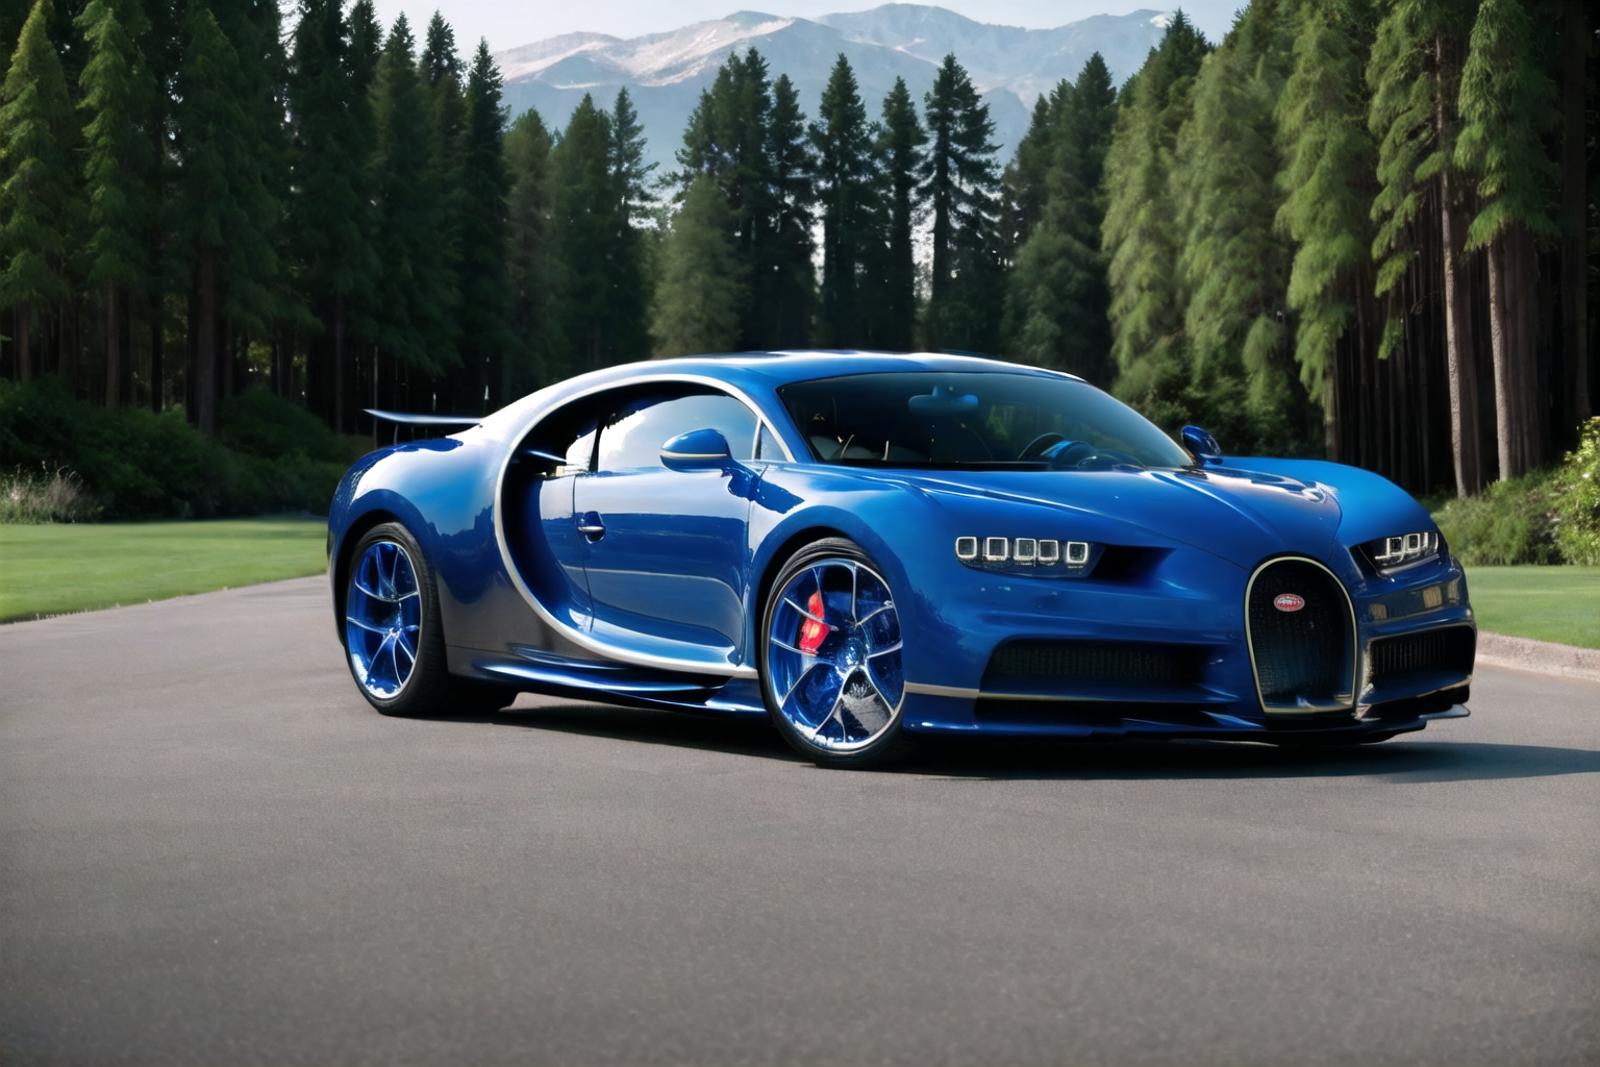 Bugatti Chiron image by wrench1815